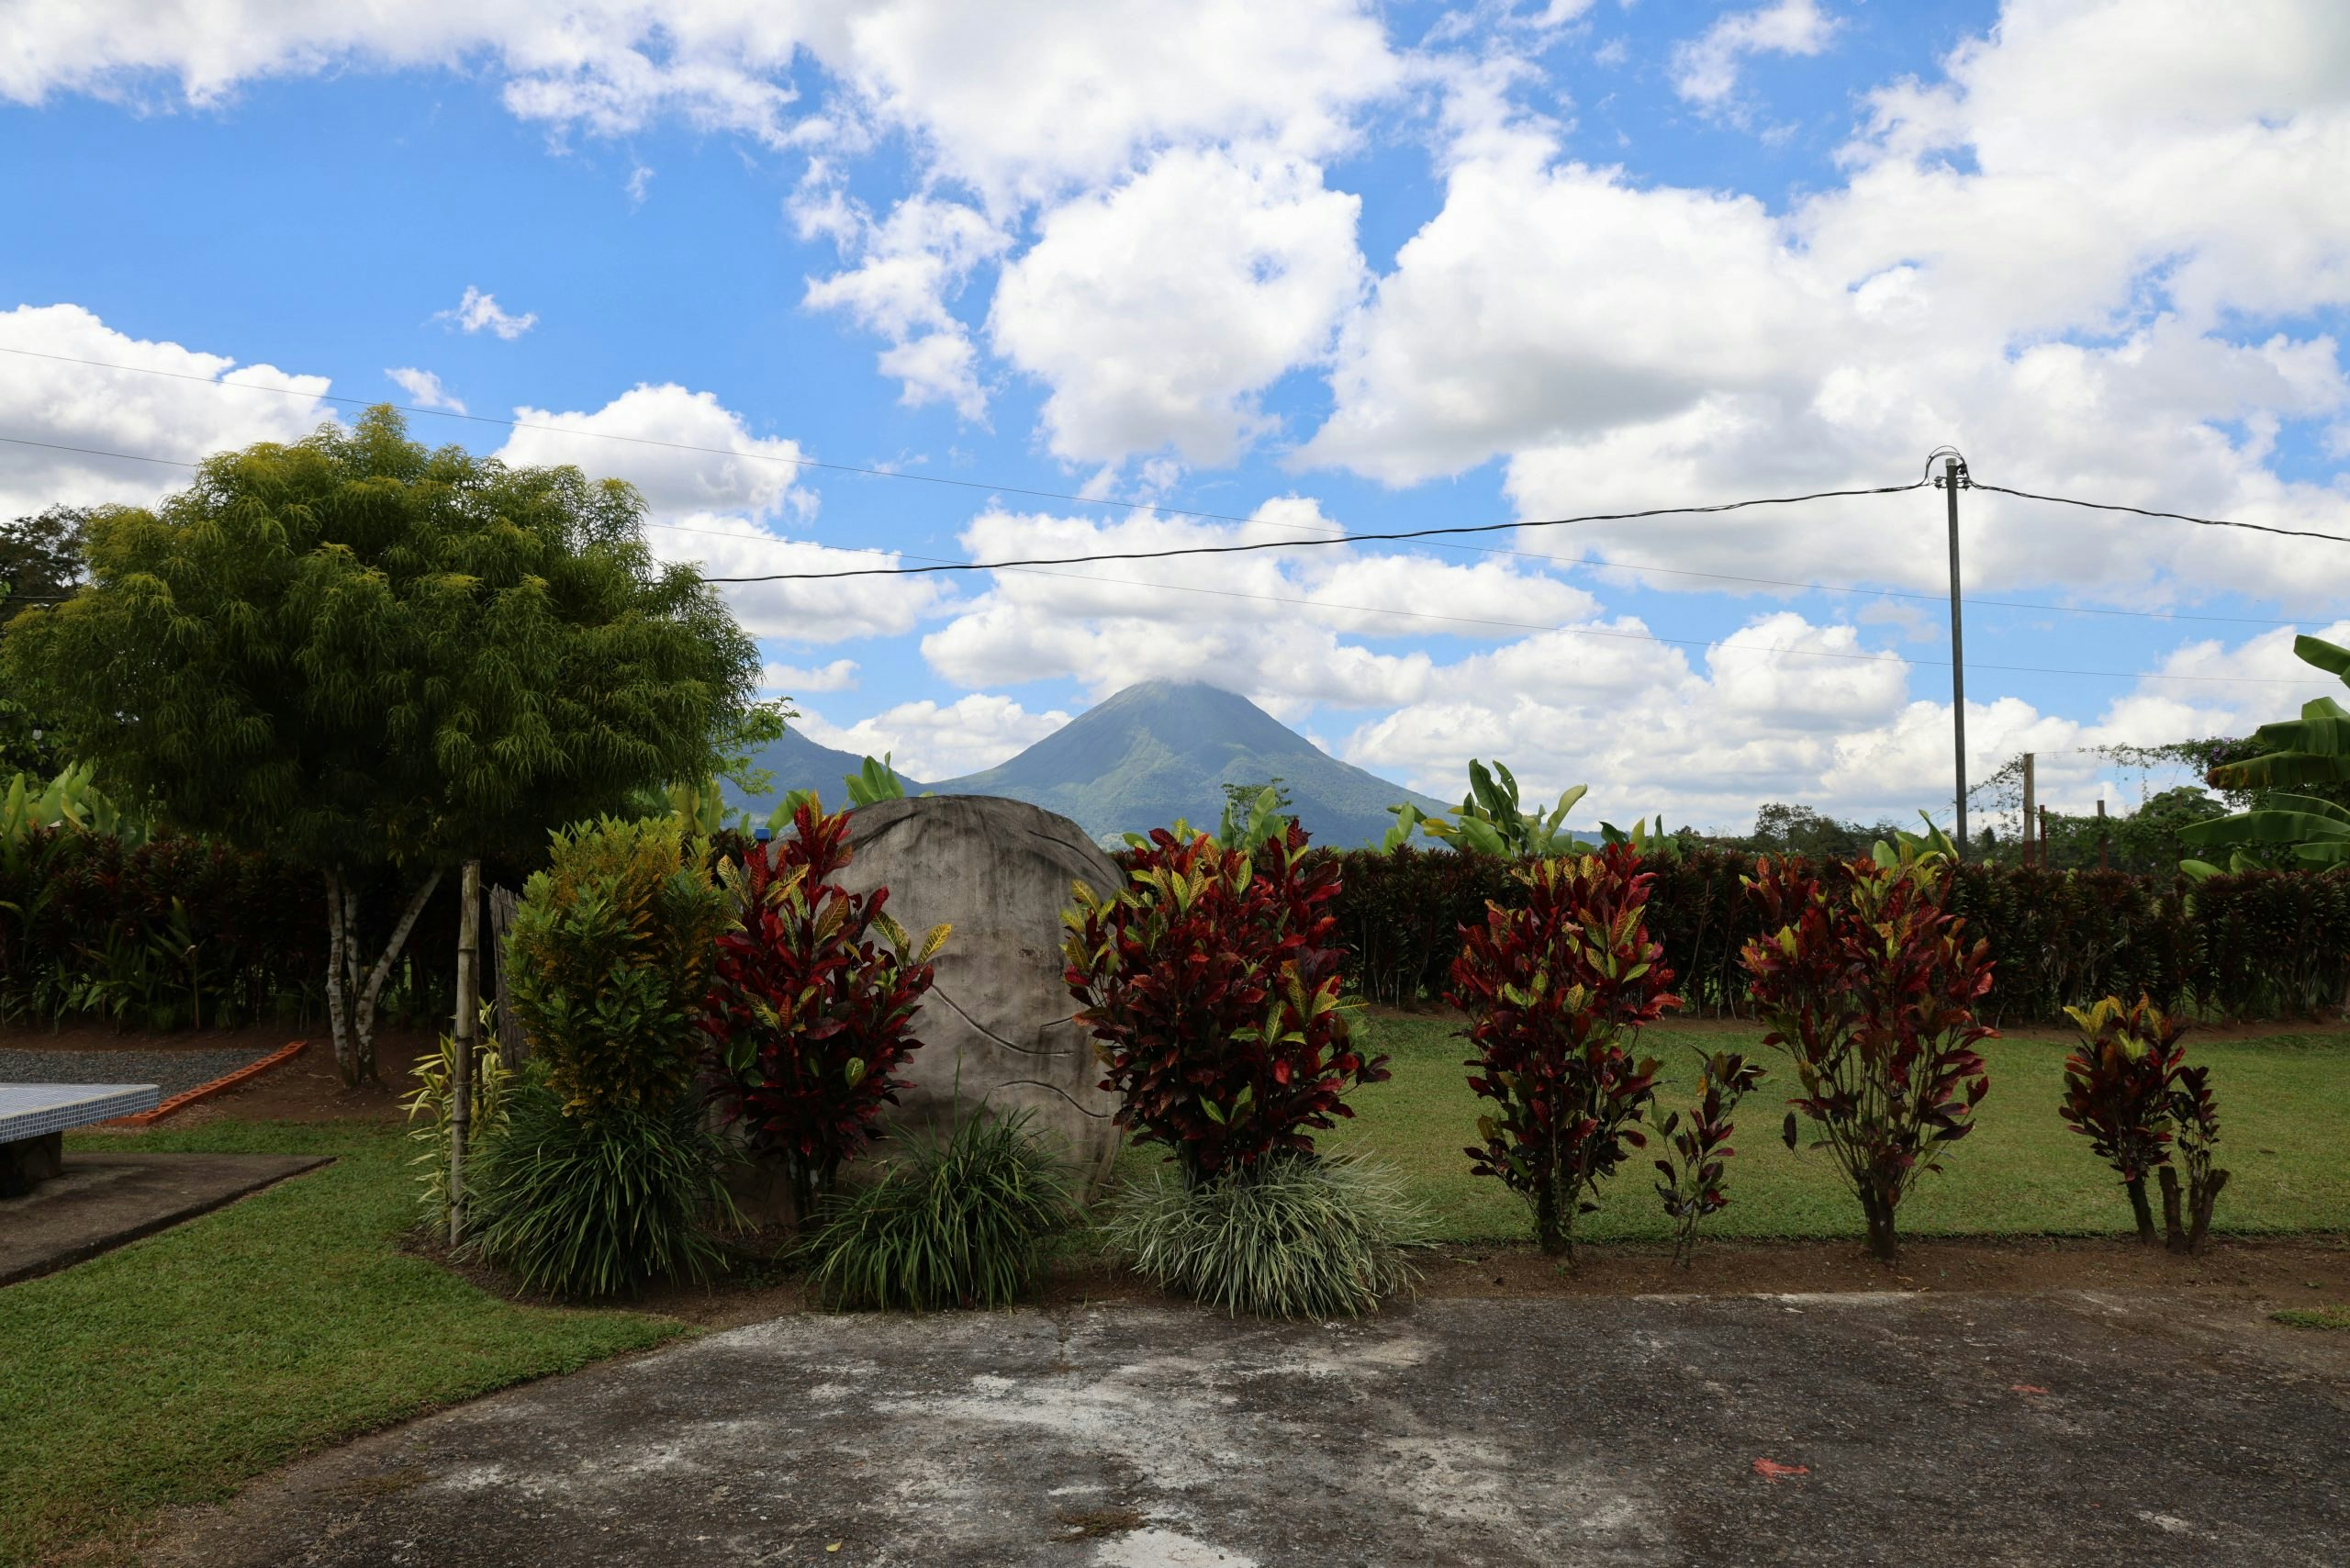 Costa Rica: Volcano and Rainforest Service